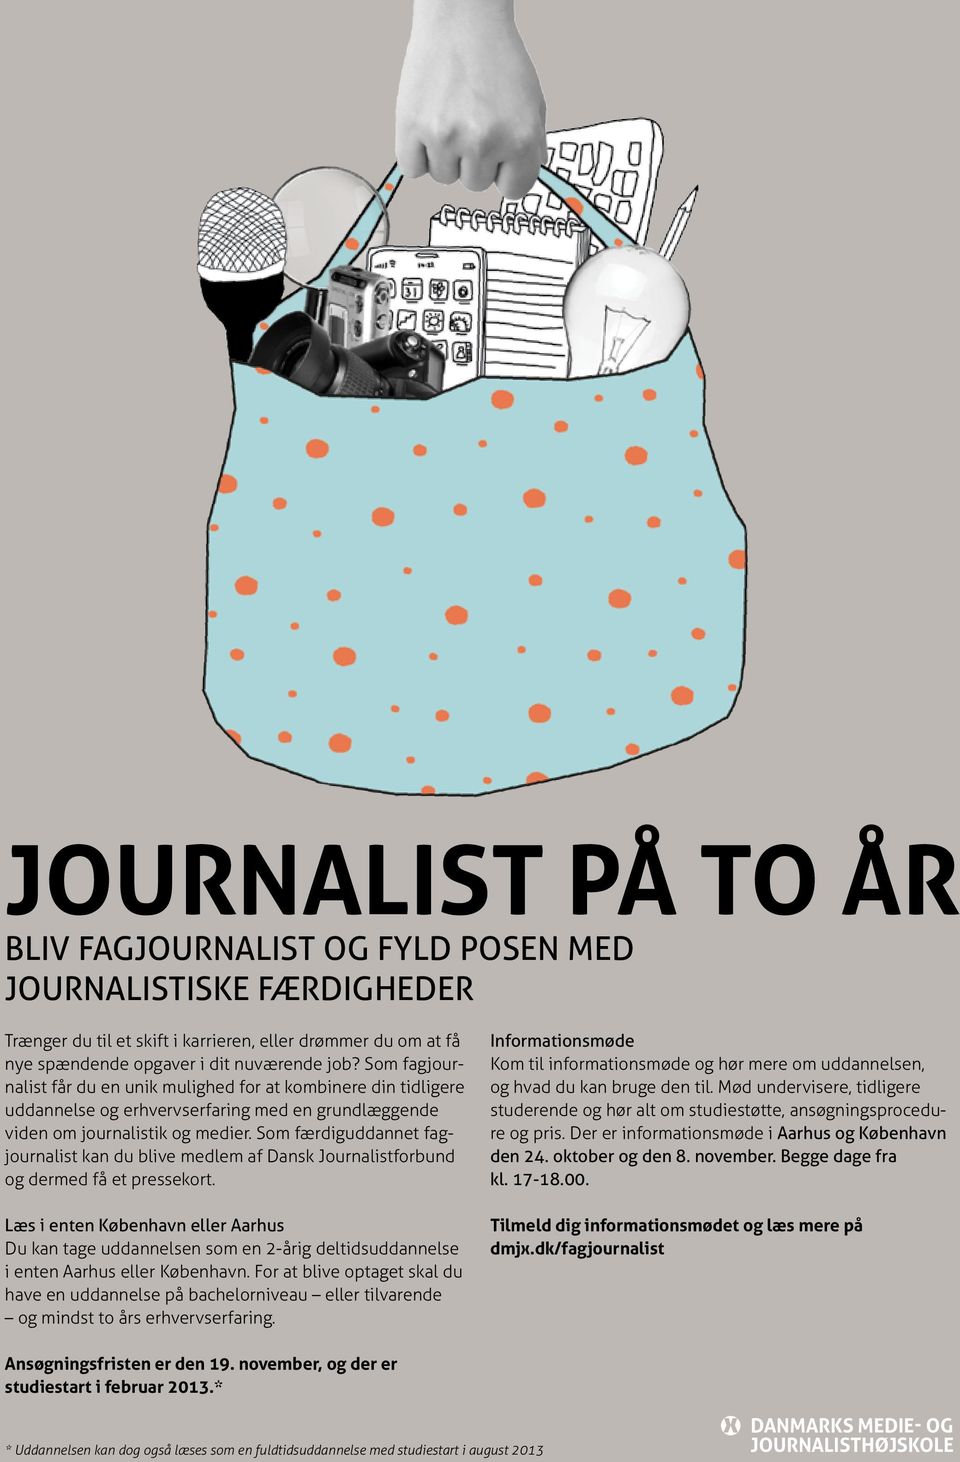 Som færdiguddannet fagjournalist kan du blive medlem af Dansk Journalistforbund og dermed få et pressekort.